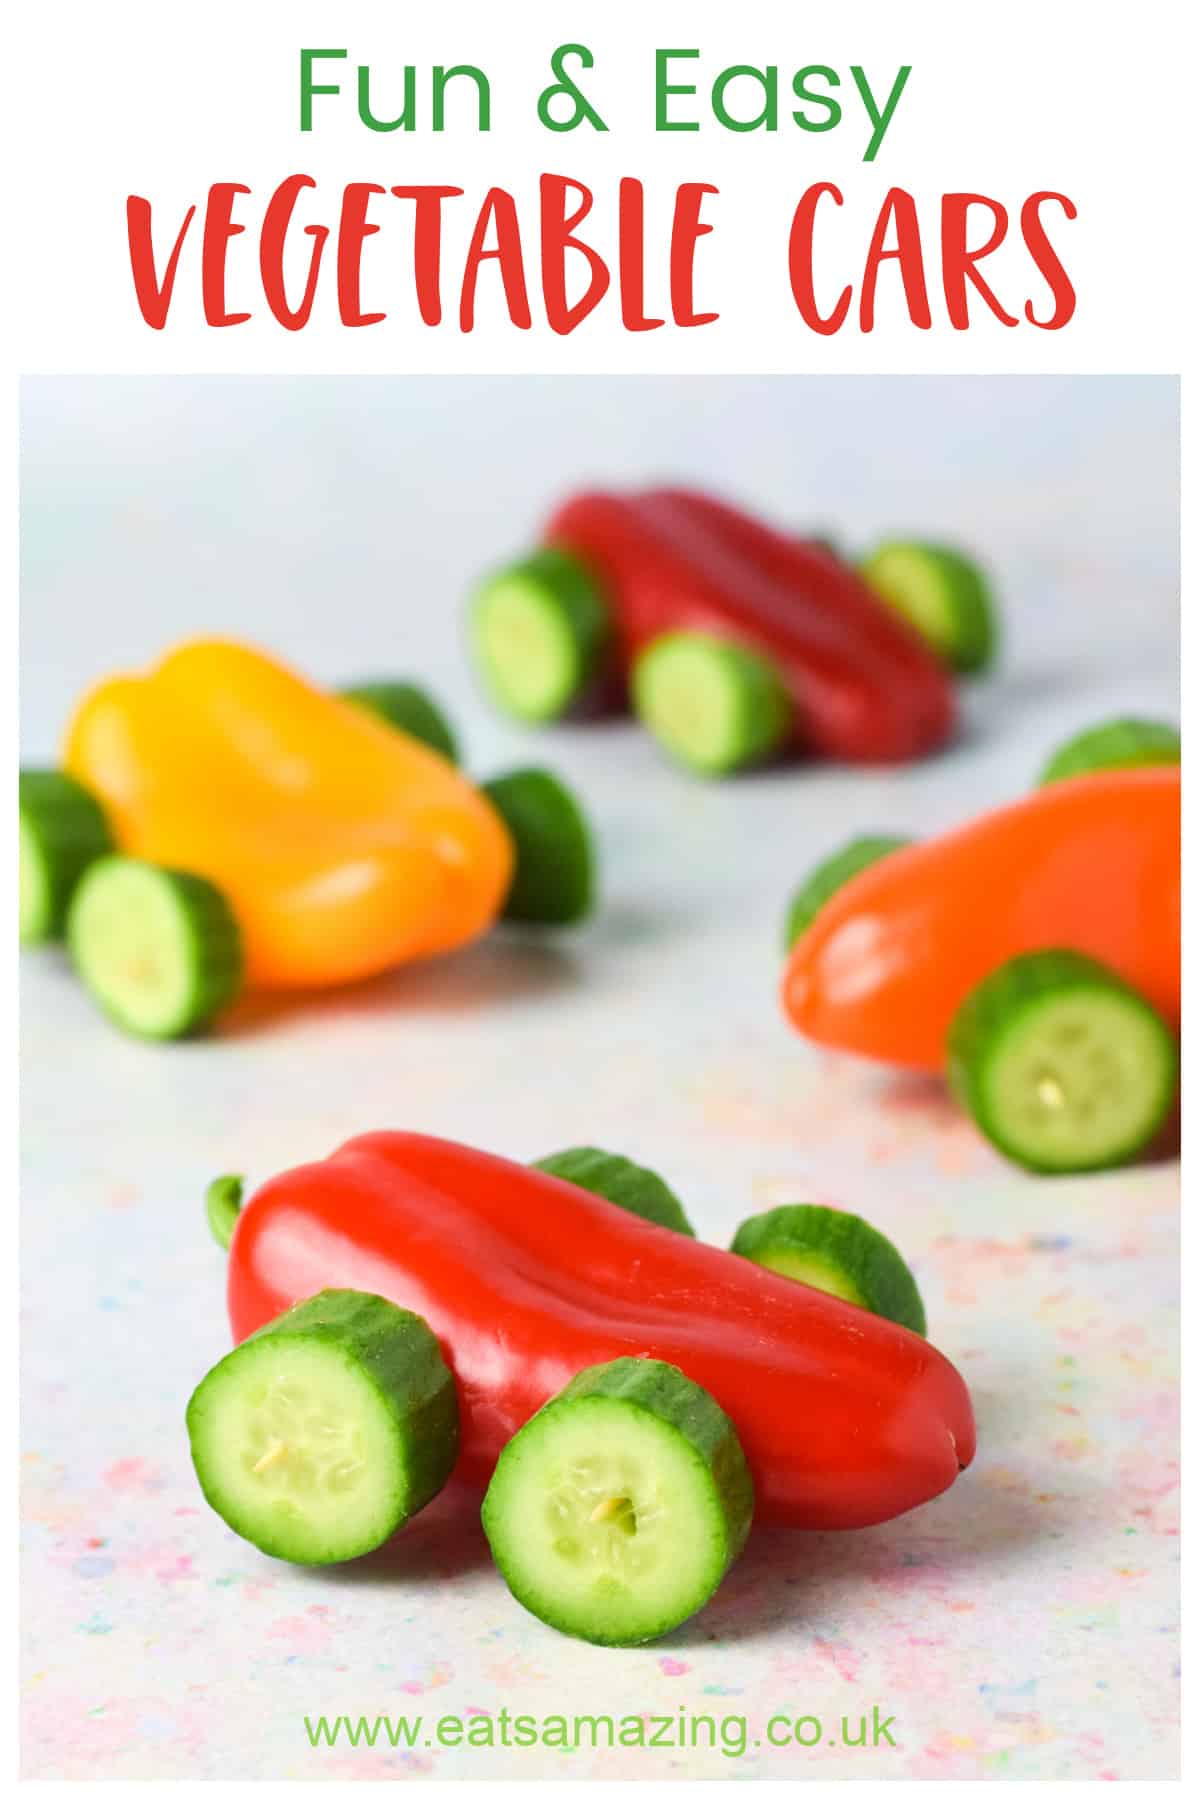 Rezept für lustige und gesunde Gemüseautos - toll für eine Party mit einem Themenauto oder für Snacks für Kinder nach der Schule